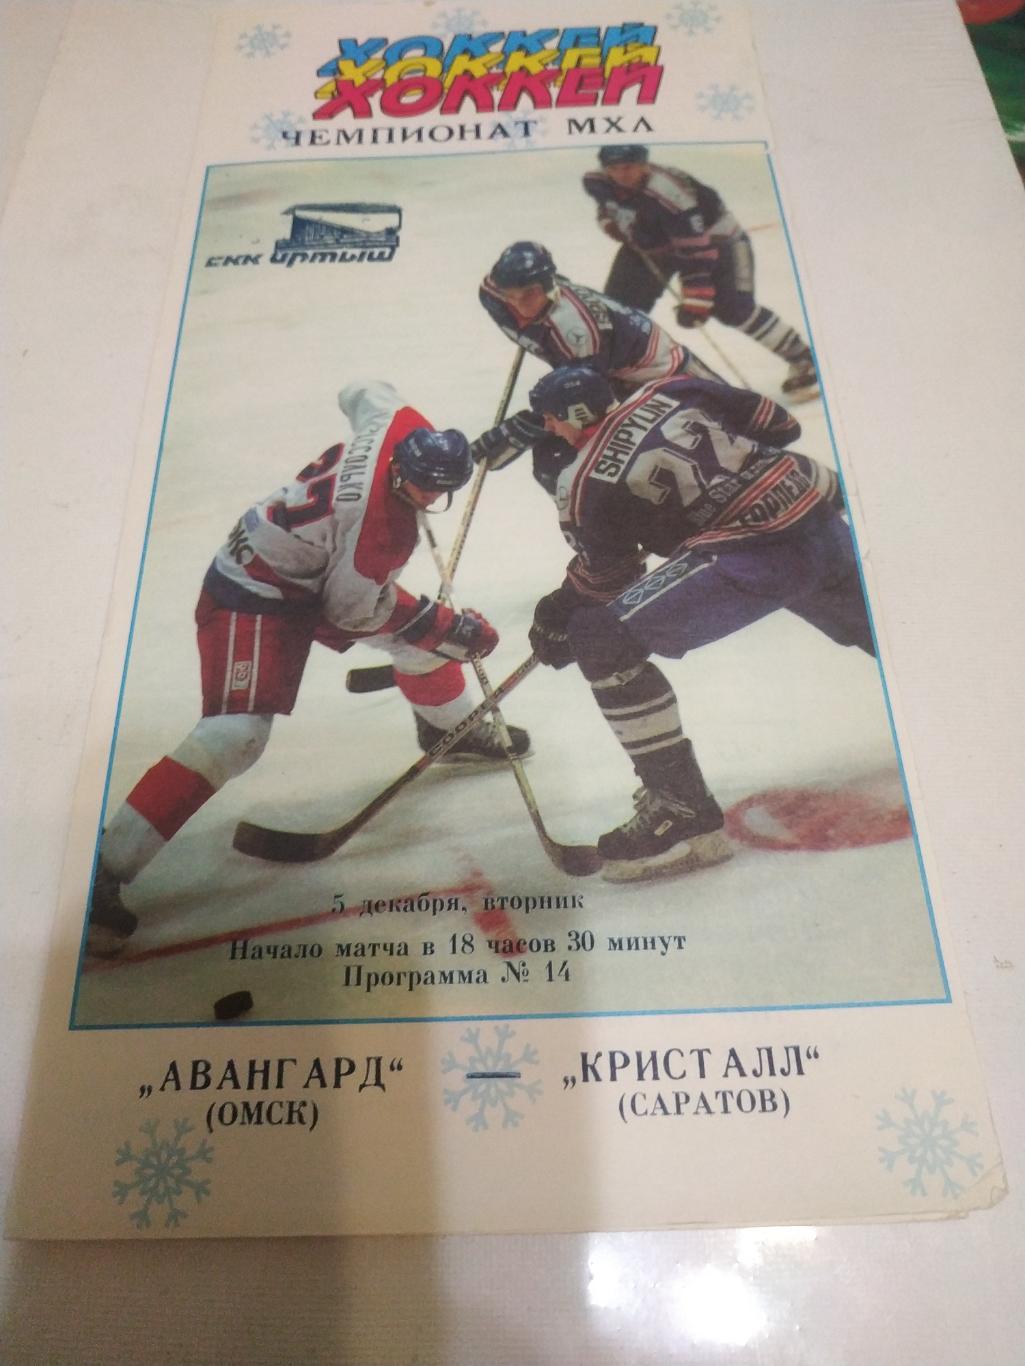 Авангард (Омск) - Кристалл (Саратов).5.12.1995.